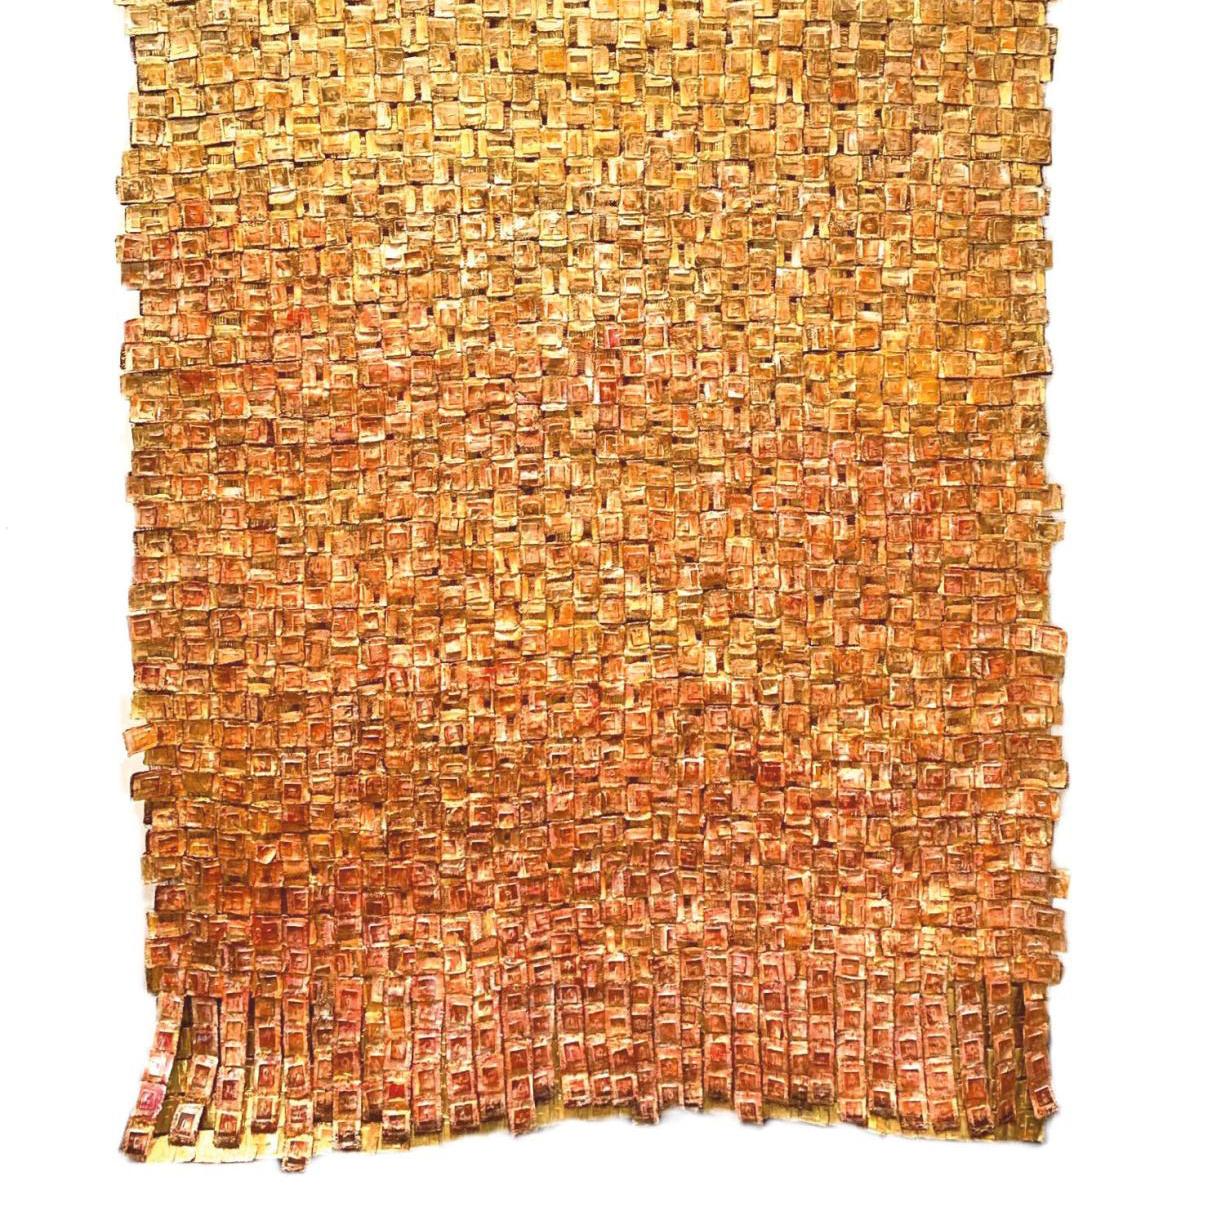 Olga de Amaral’s Textiles: Halfway Between Colombian Crafts and Contemporary Art - Pre-sale